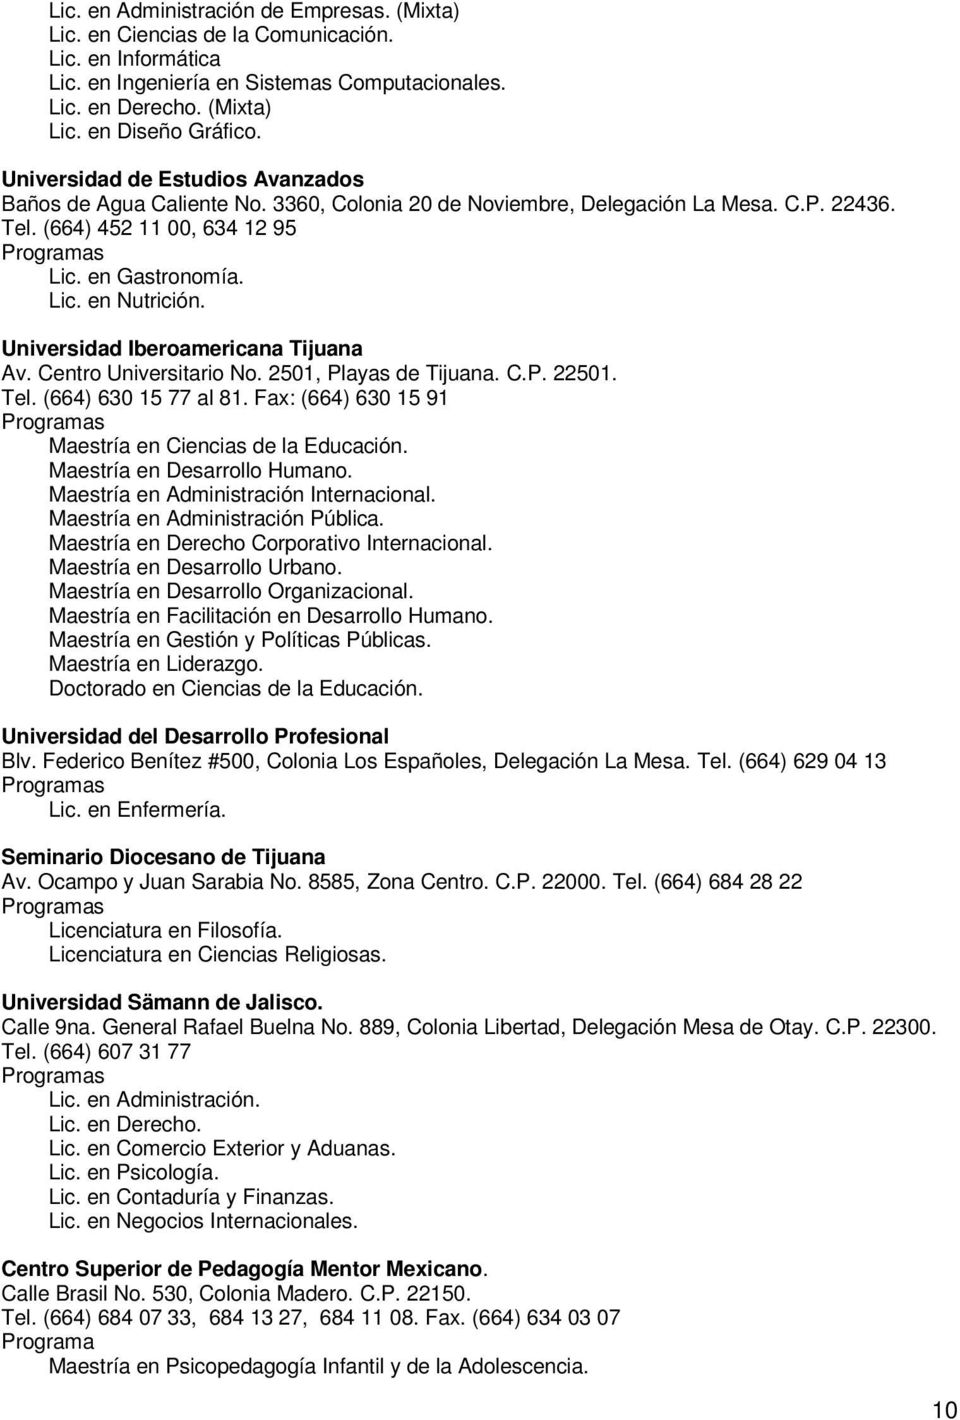 Universidad Iberoamericana Tijuana Av. Centro Universitario No. 2501, Playas de Tijuana. C.P. 22501. Tel. (664) 630 15 77 al 81. Fax: (664) 630 15 91 Maestría en Ciencias de la Educación.